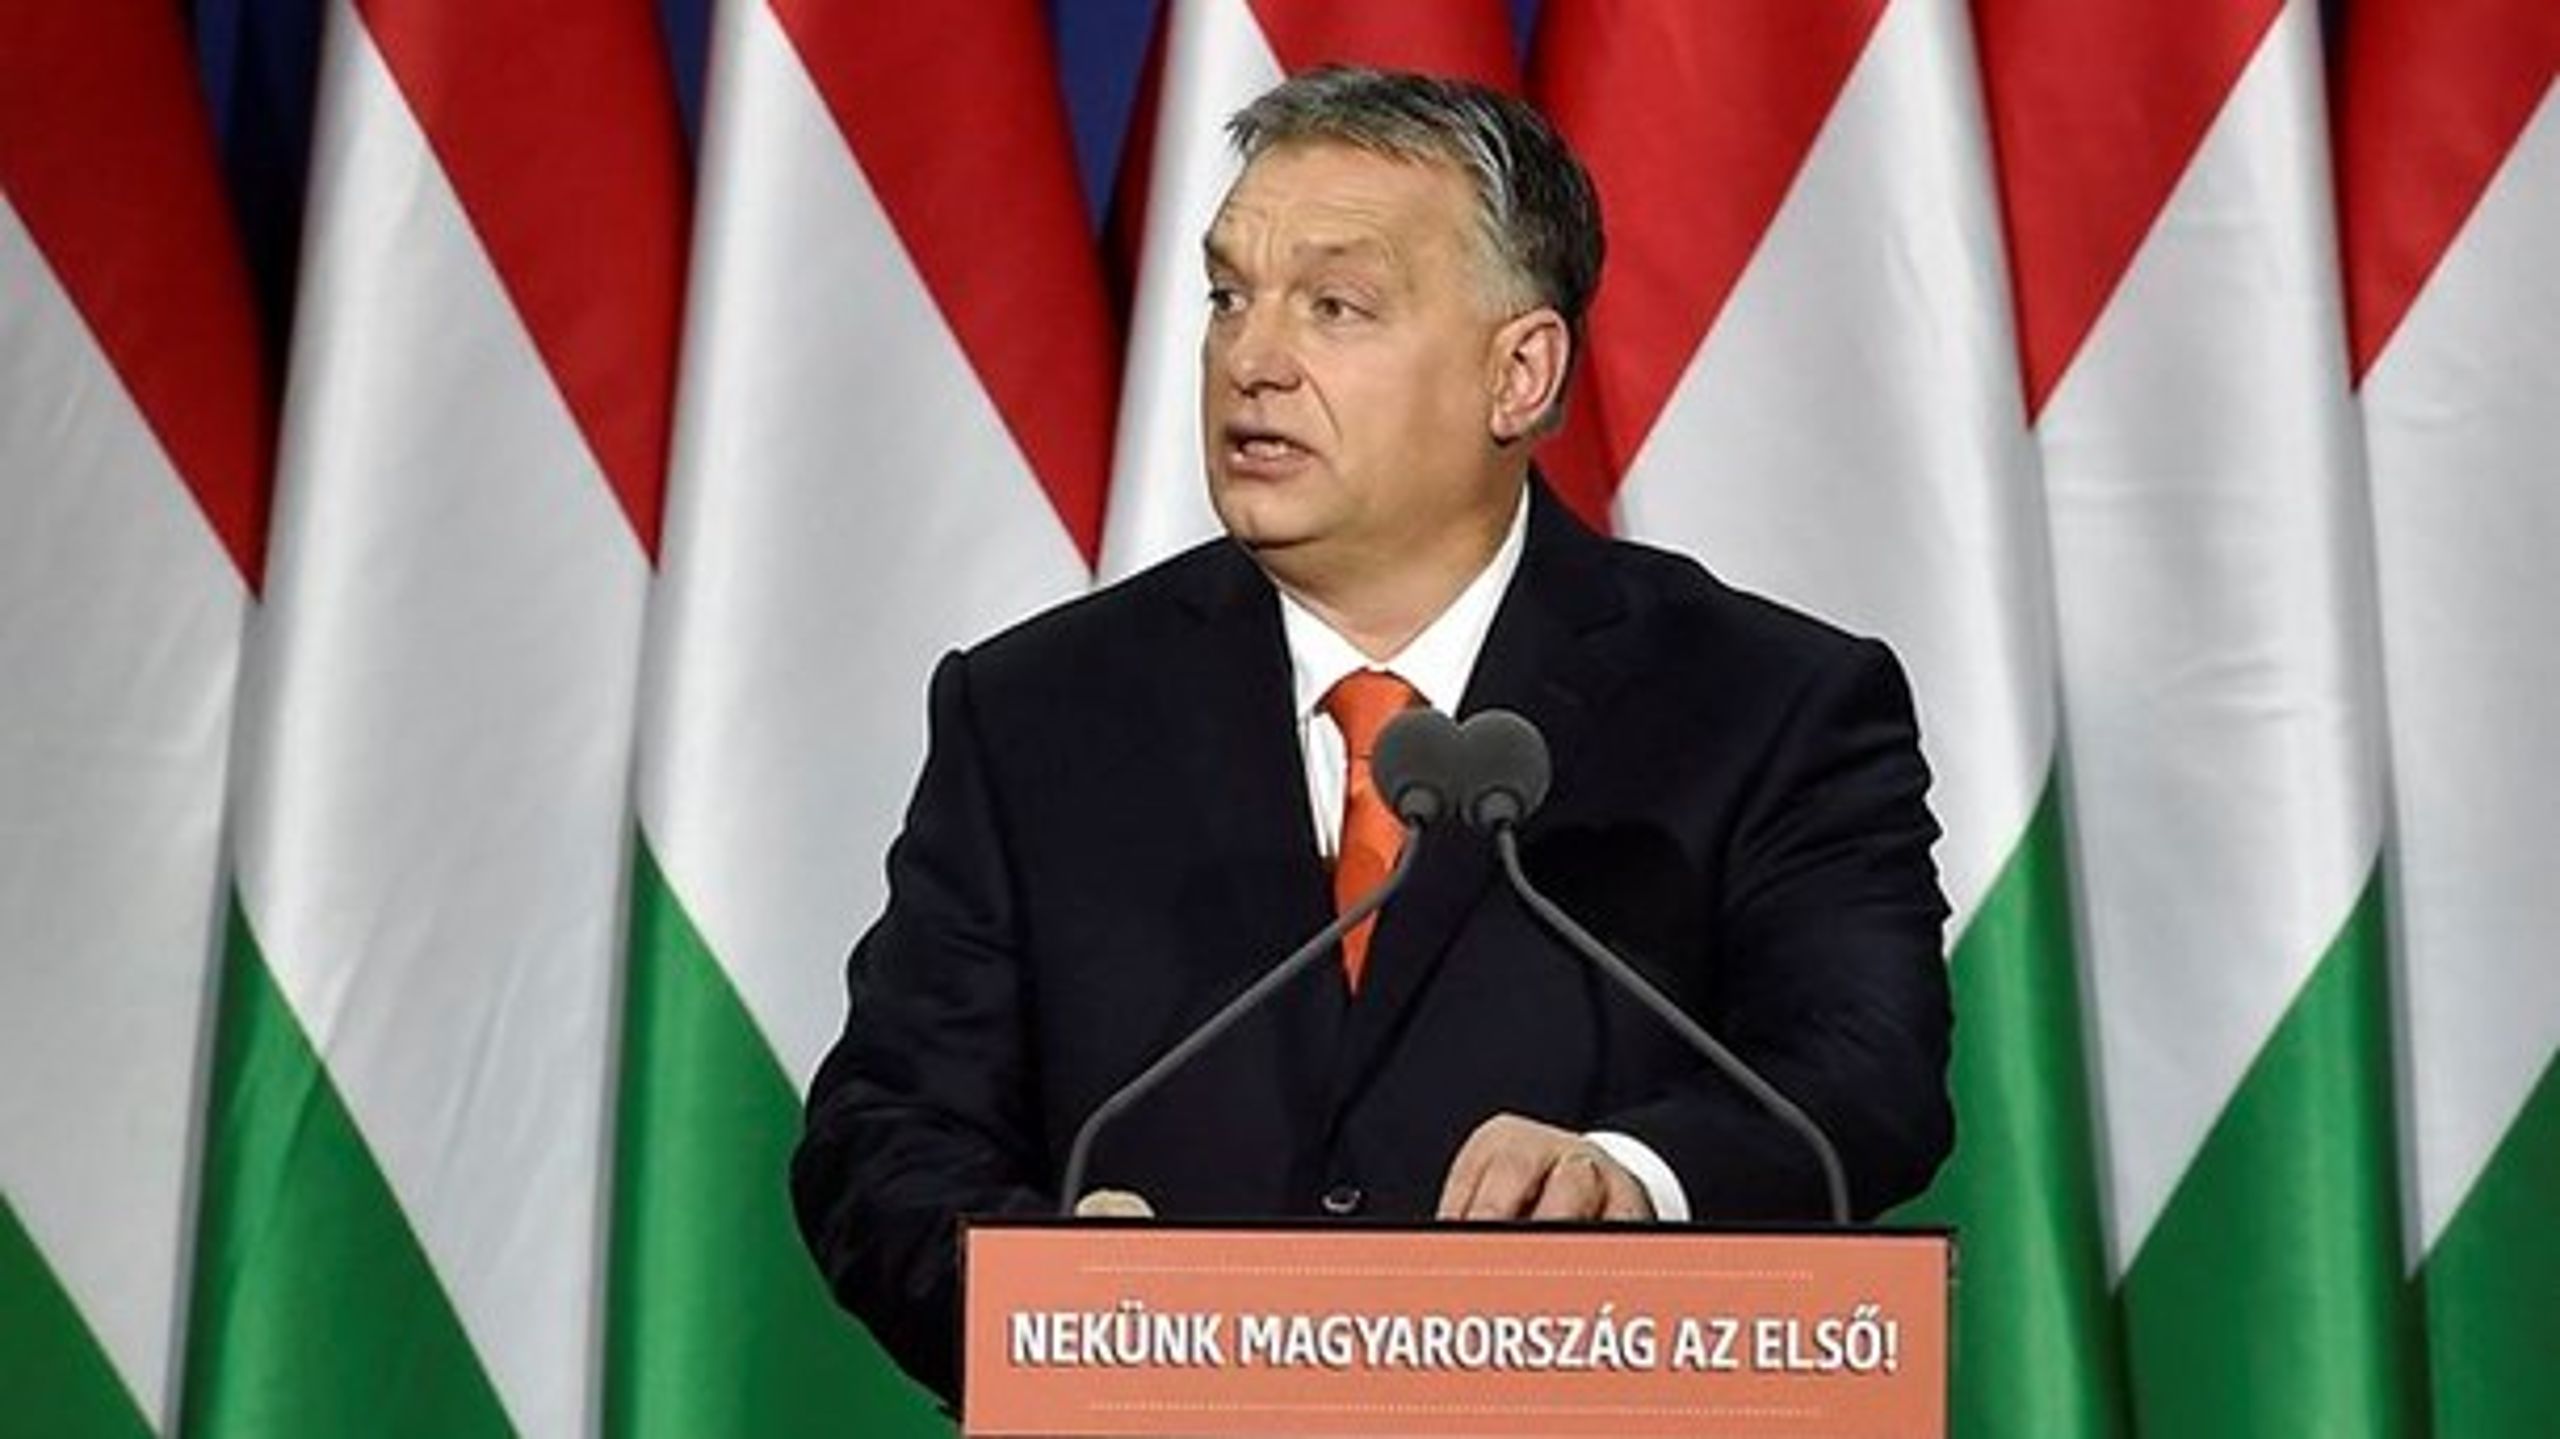 Den ungarske premierminister har fået tilnavnet Viktatoren fra Orbanistan på grund af sin erklærede støtte til et såkaldt illiberalt demokrati og sine forsøg på at koncentrere magten hos sit regeringsparti, Fidesz.